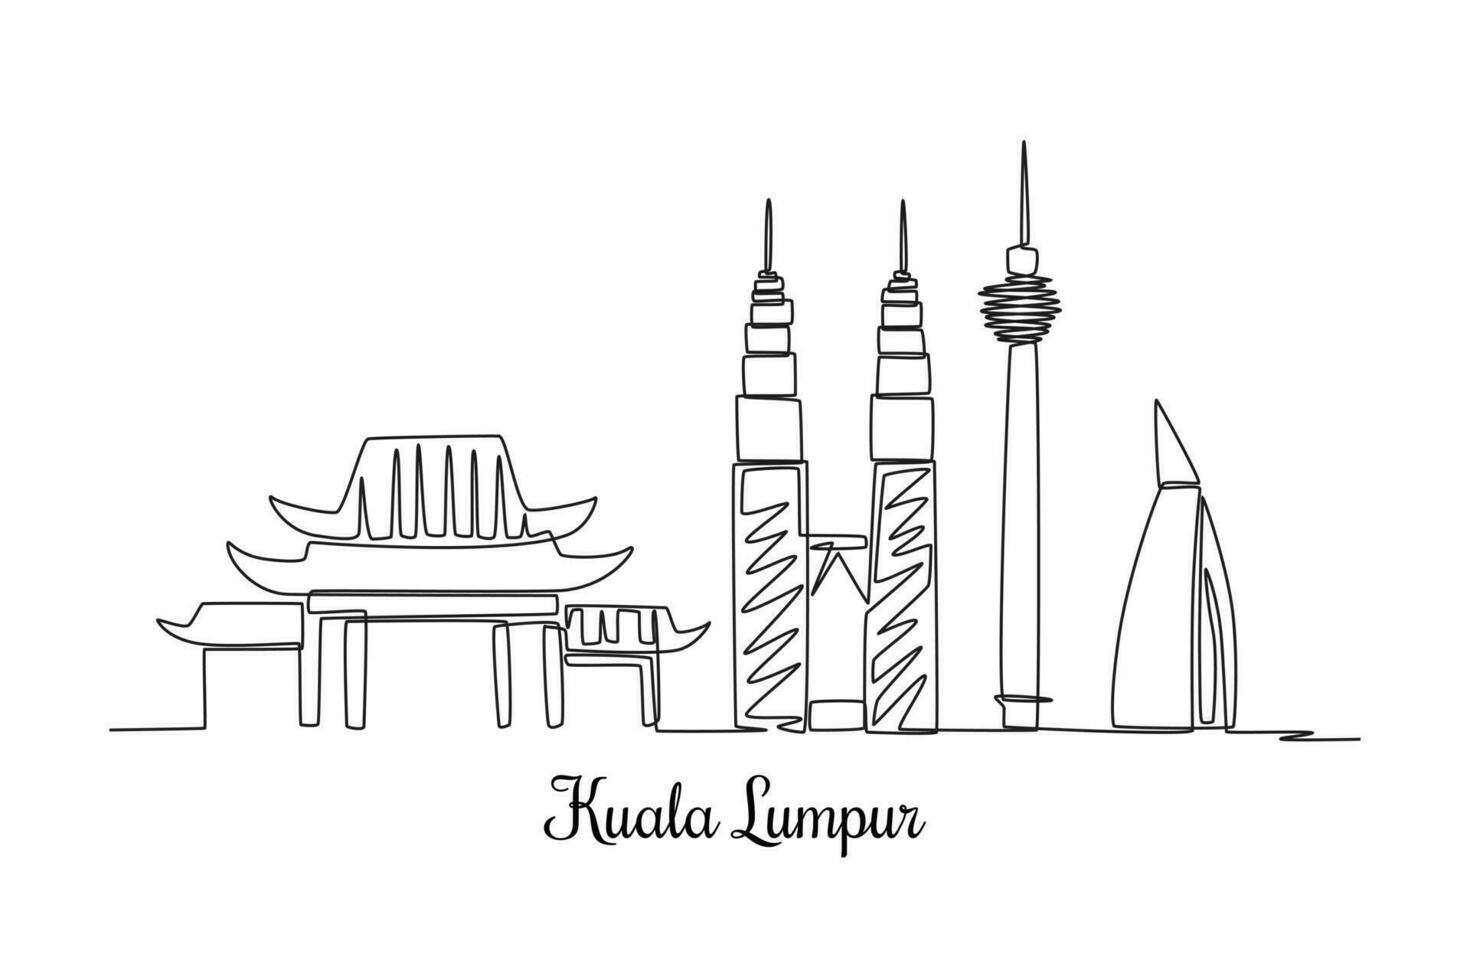 Single einer Linie Zeichnung kuala lumpur Horizont. Stadt Konzept. kontinuierlich Linie zeichnen Design Grafik Vektor Illustration.